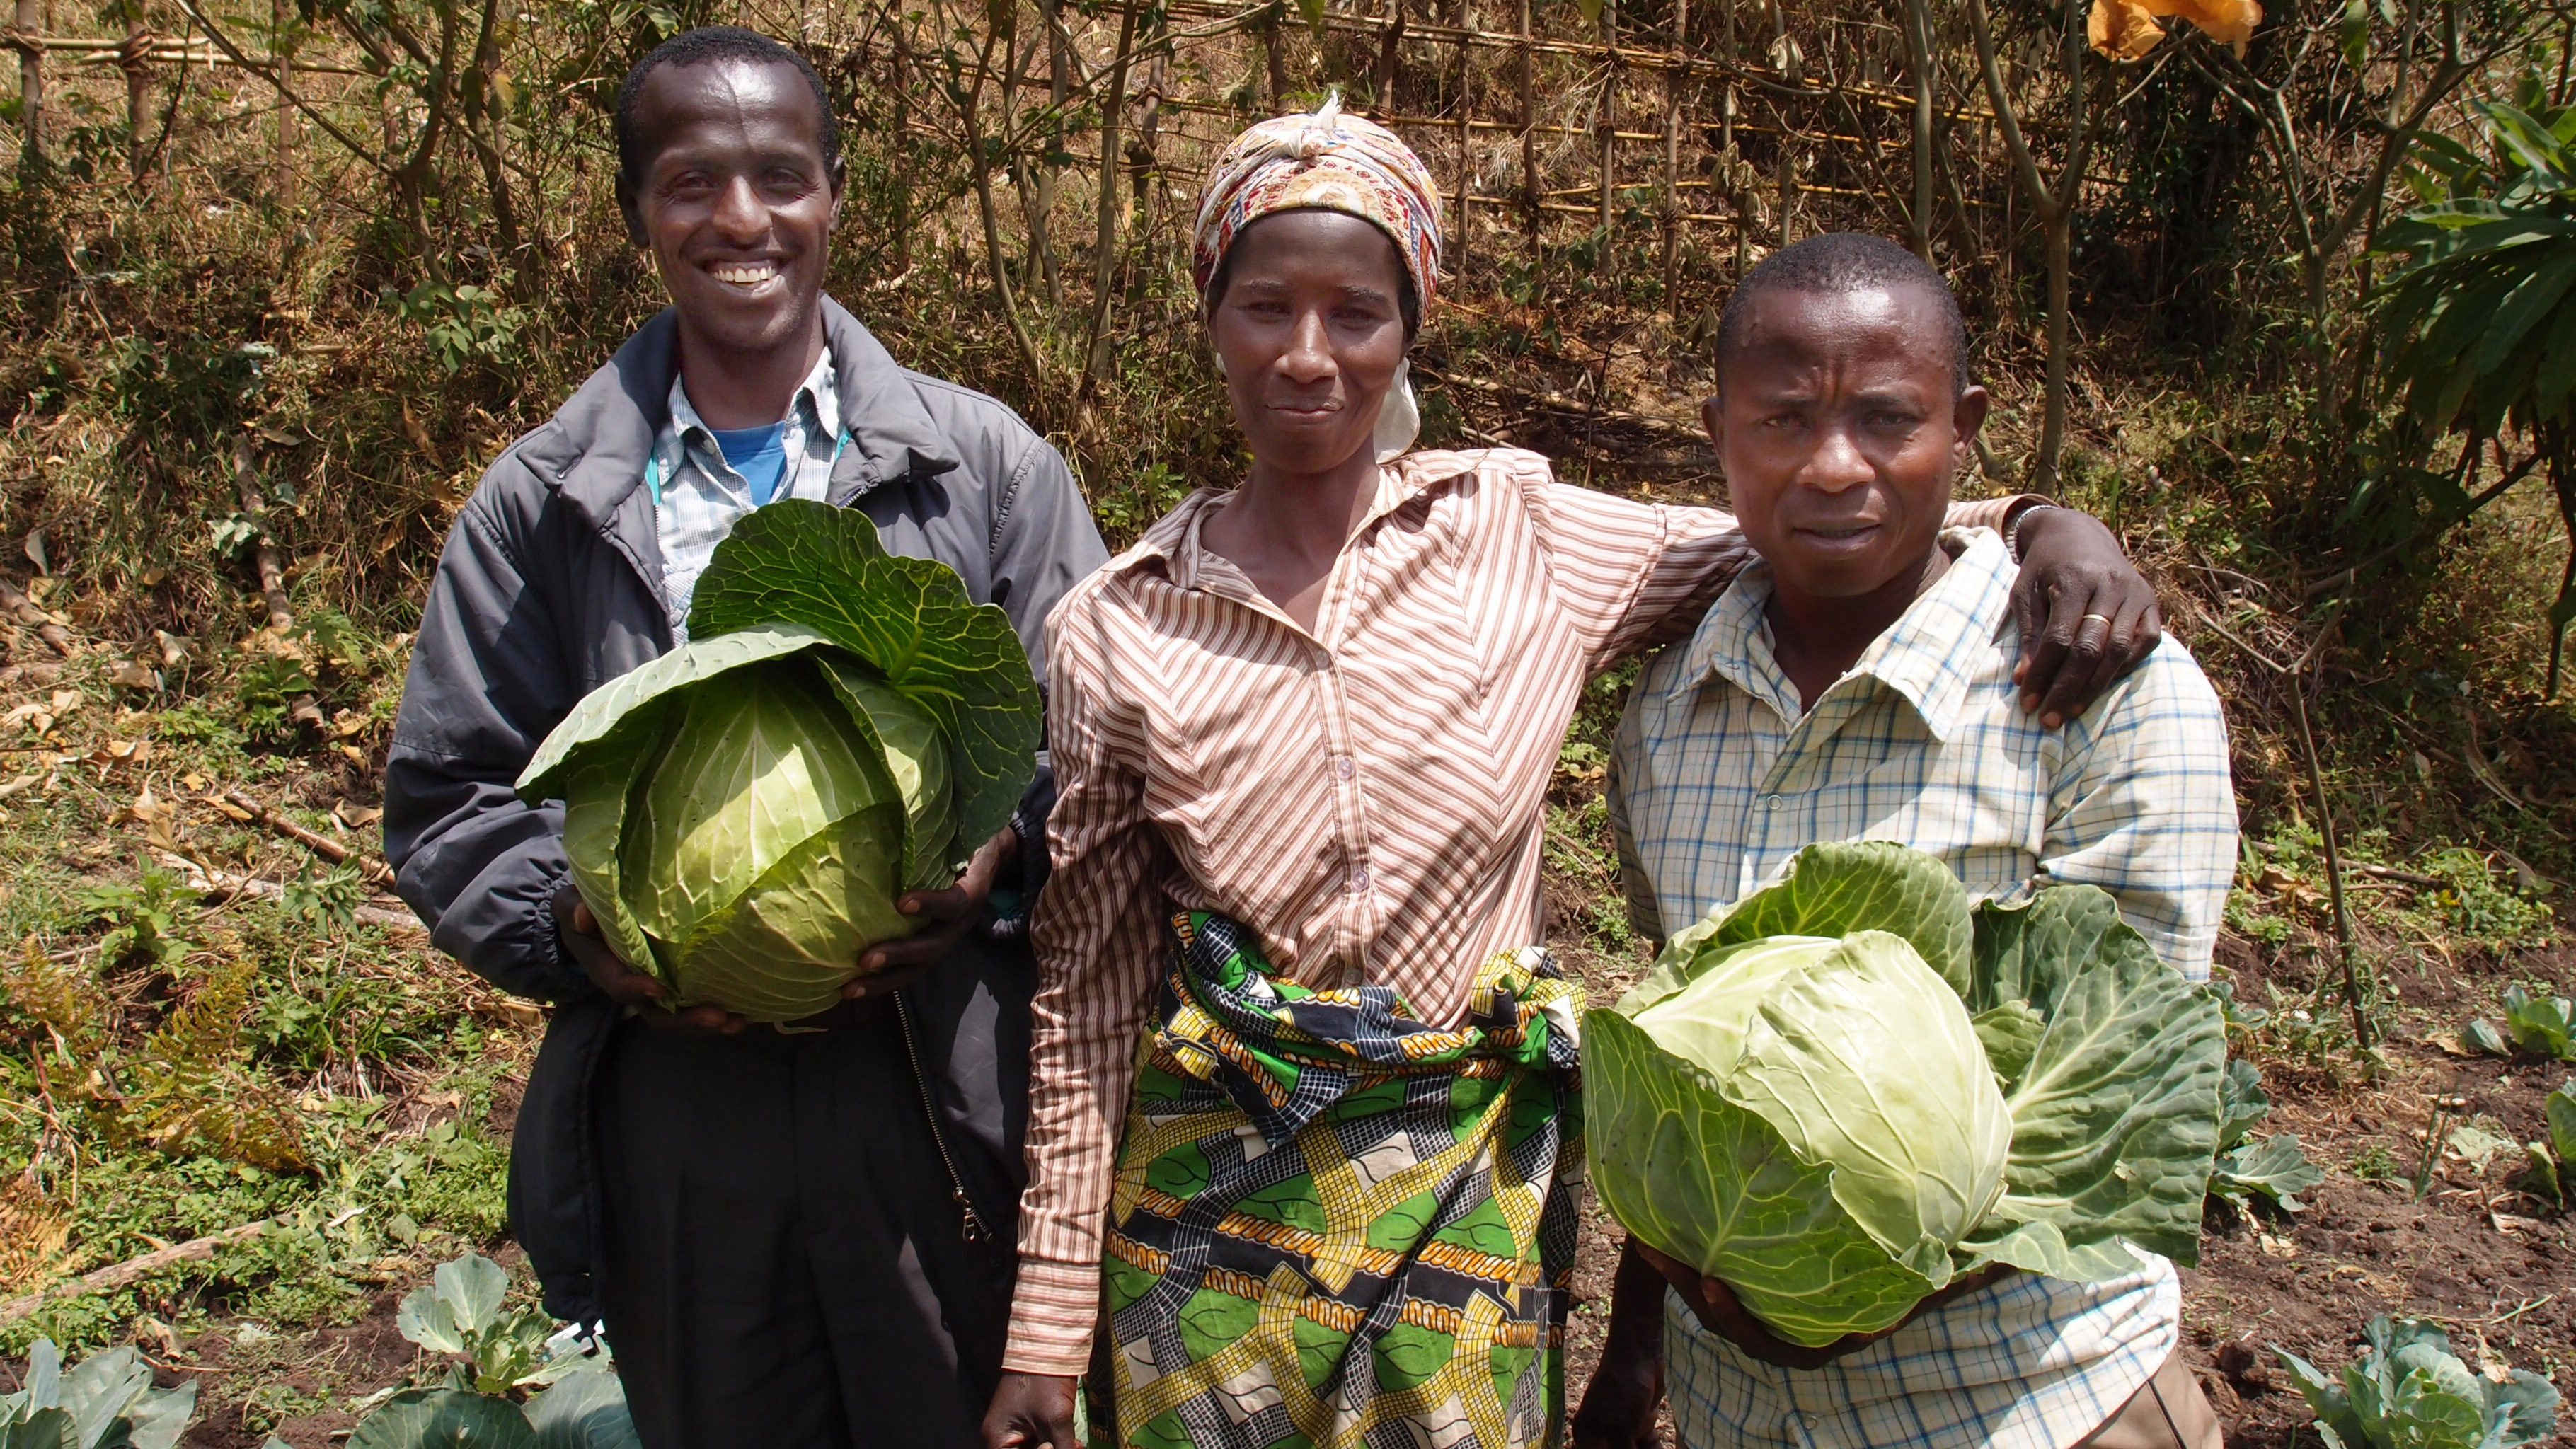 Die 40-Jährige Perusi Nyarukund (m) hat Gemüsekulturen erhalten und begleitet von dem landwirtschaftlichen Berater Aimable (li) einen Gemüsegarten angelegt. Der Projekt-Agronom von UGEAFI, Ilelo A-umba Leli (re), hat den Zaun für den Garten gebaut.